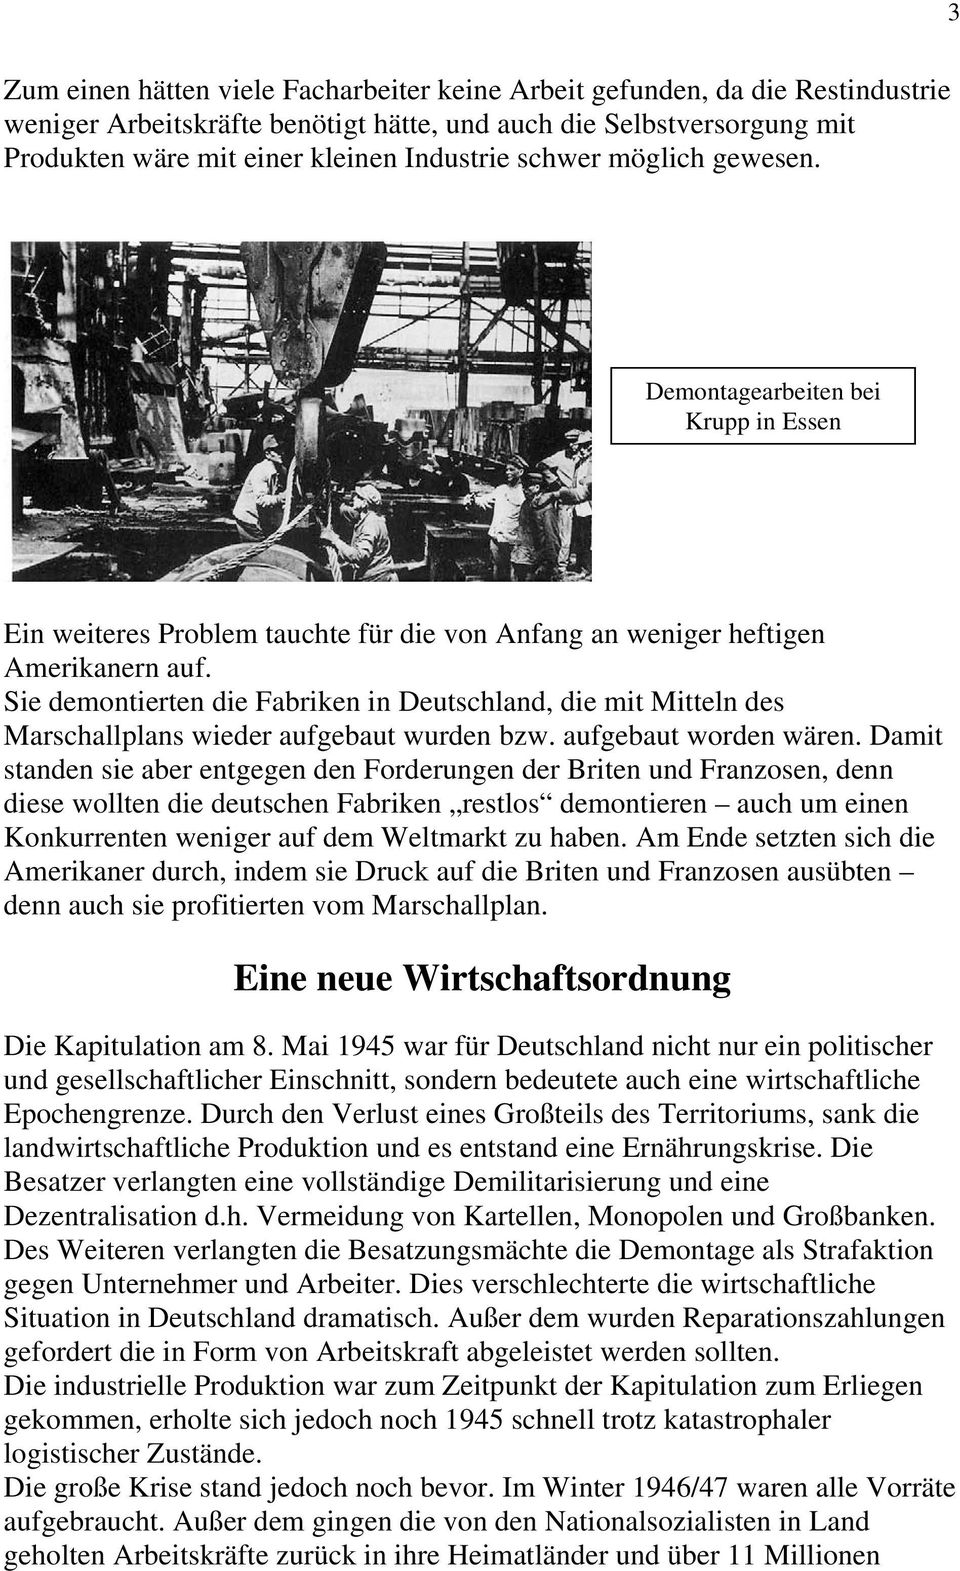 Sie demontierten die Fabriken in Deutschland, die mit Mitteln des Marschallplans wieder aufgebaut wurden bzw. aufgebaut worden wären.